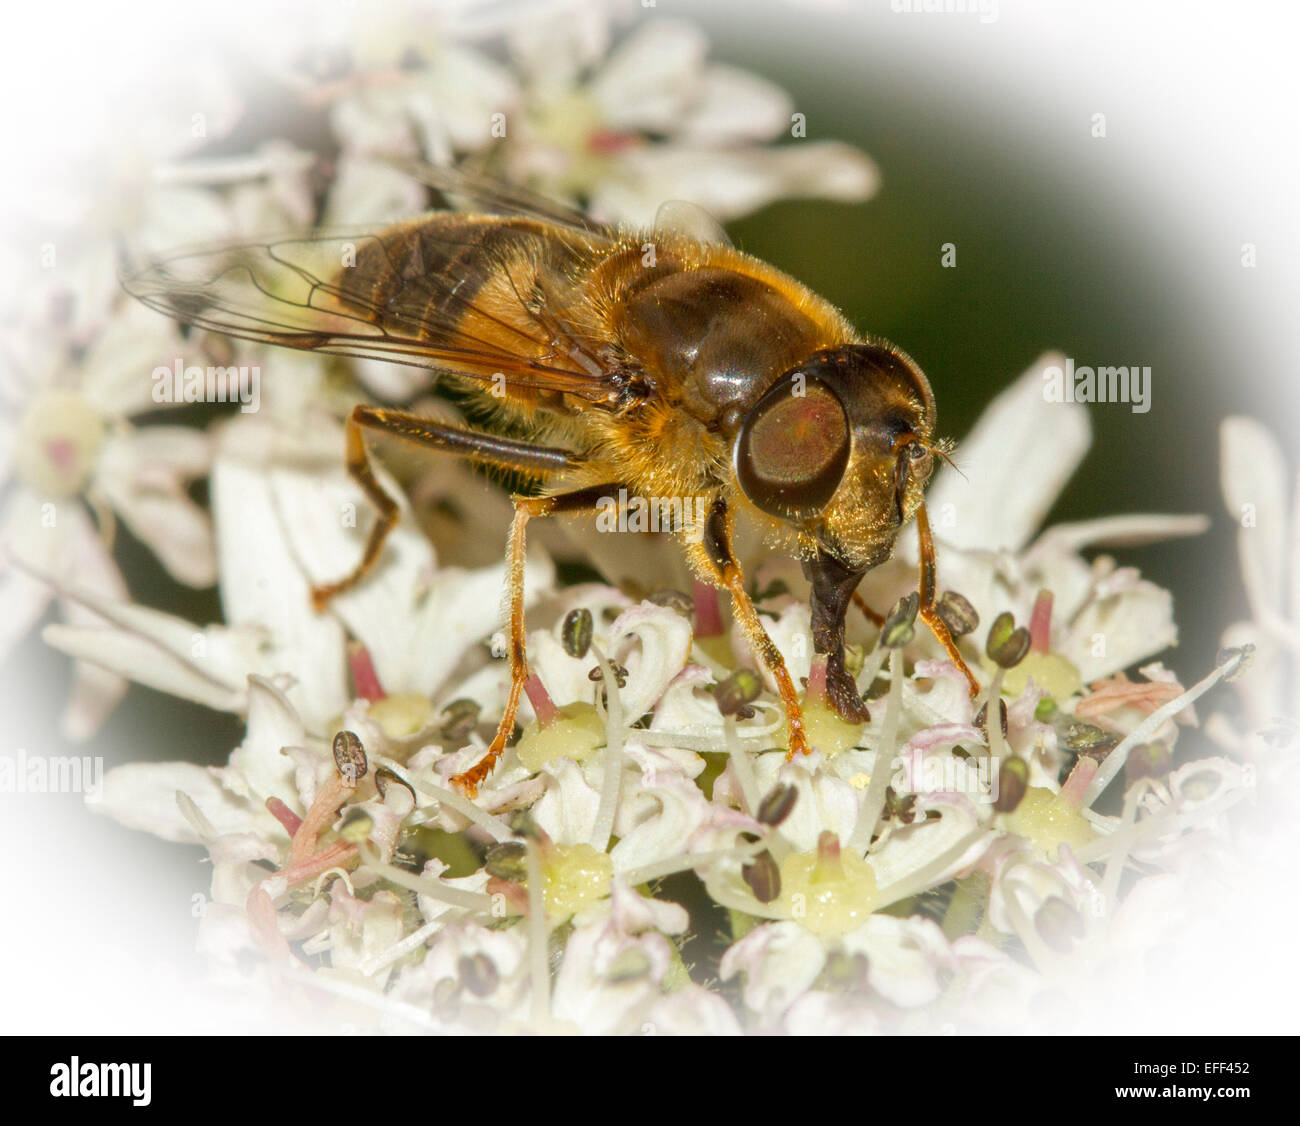 Spettacolare immagine macro di bee, con grandi occhi e proboscide chiaramente visibile, di alimentazione su un cluster di fiori selvatici bianco Foto Stock